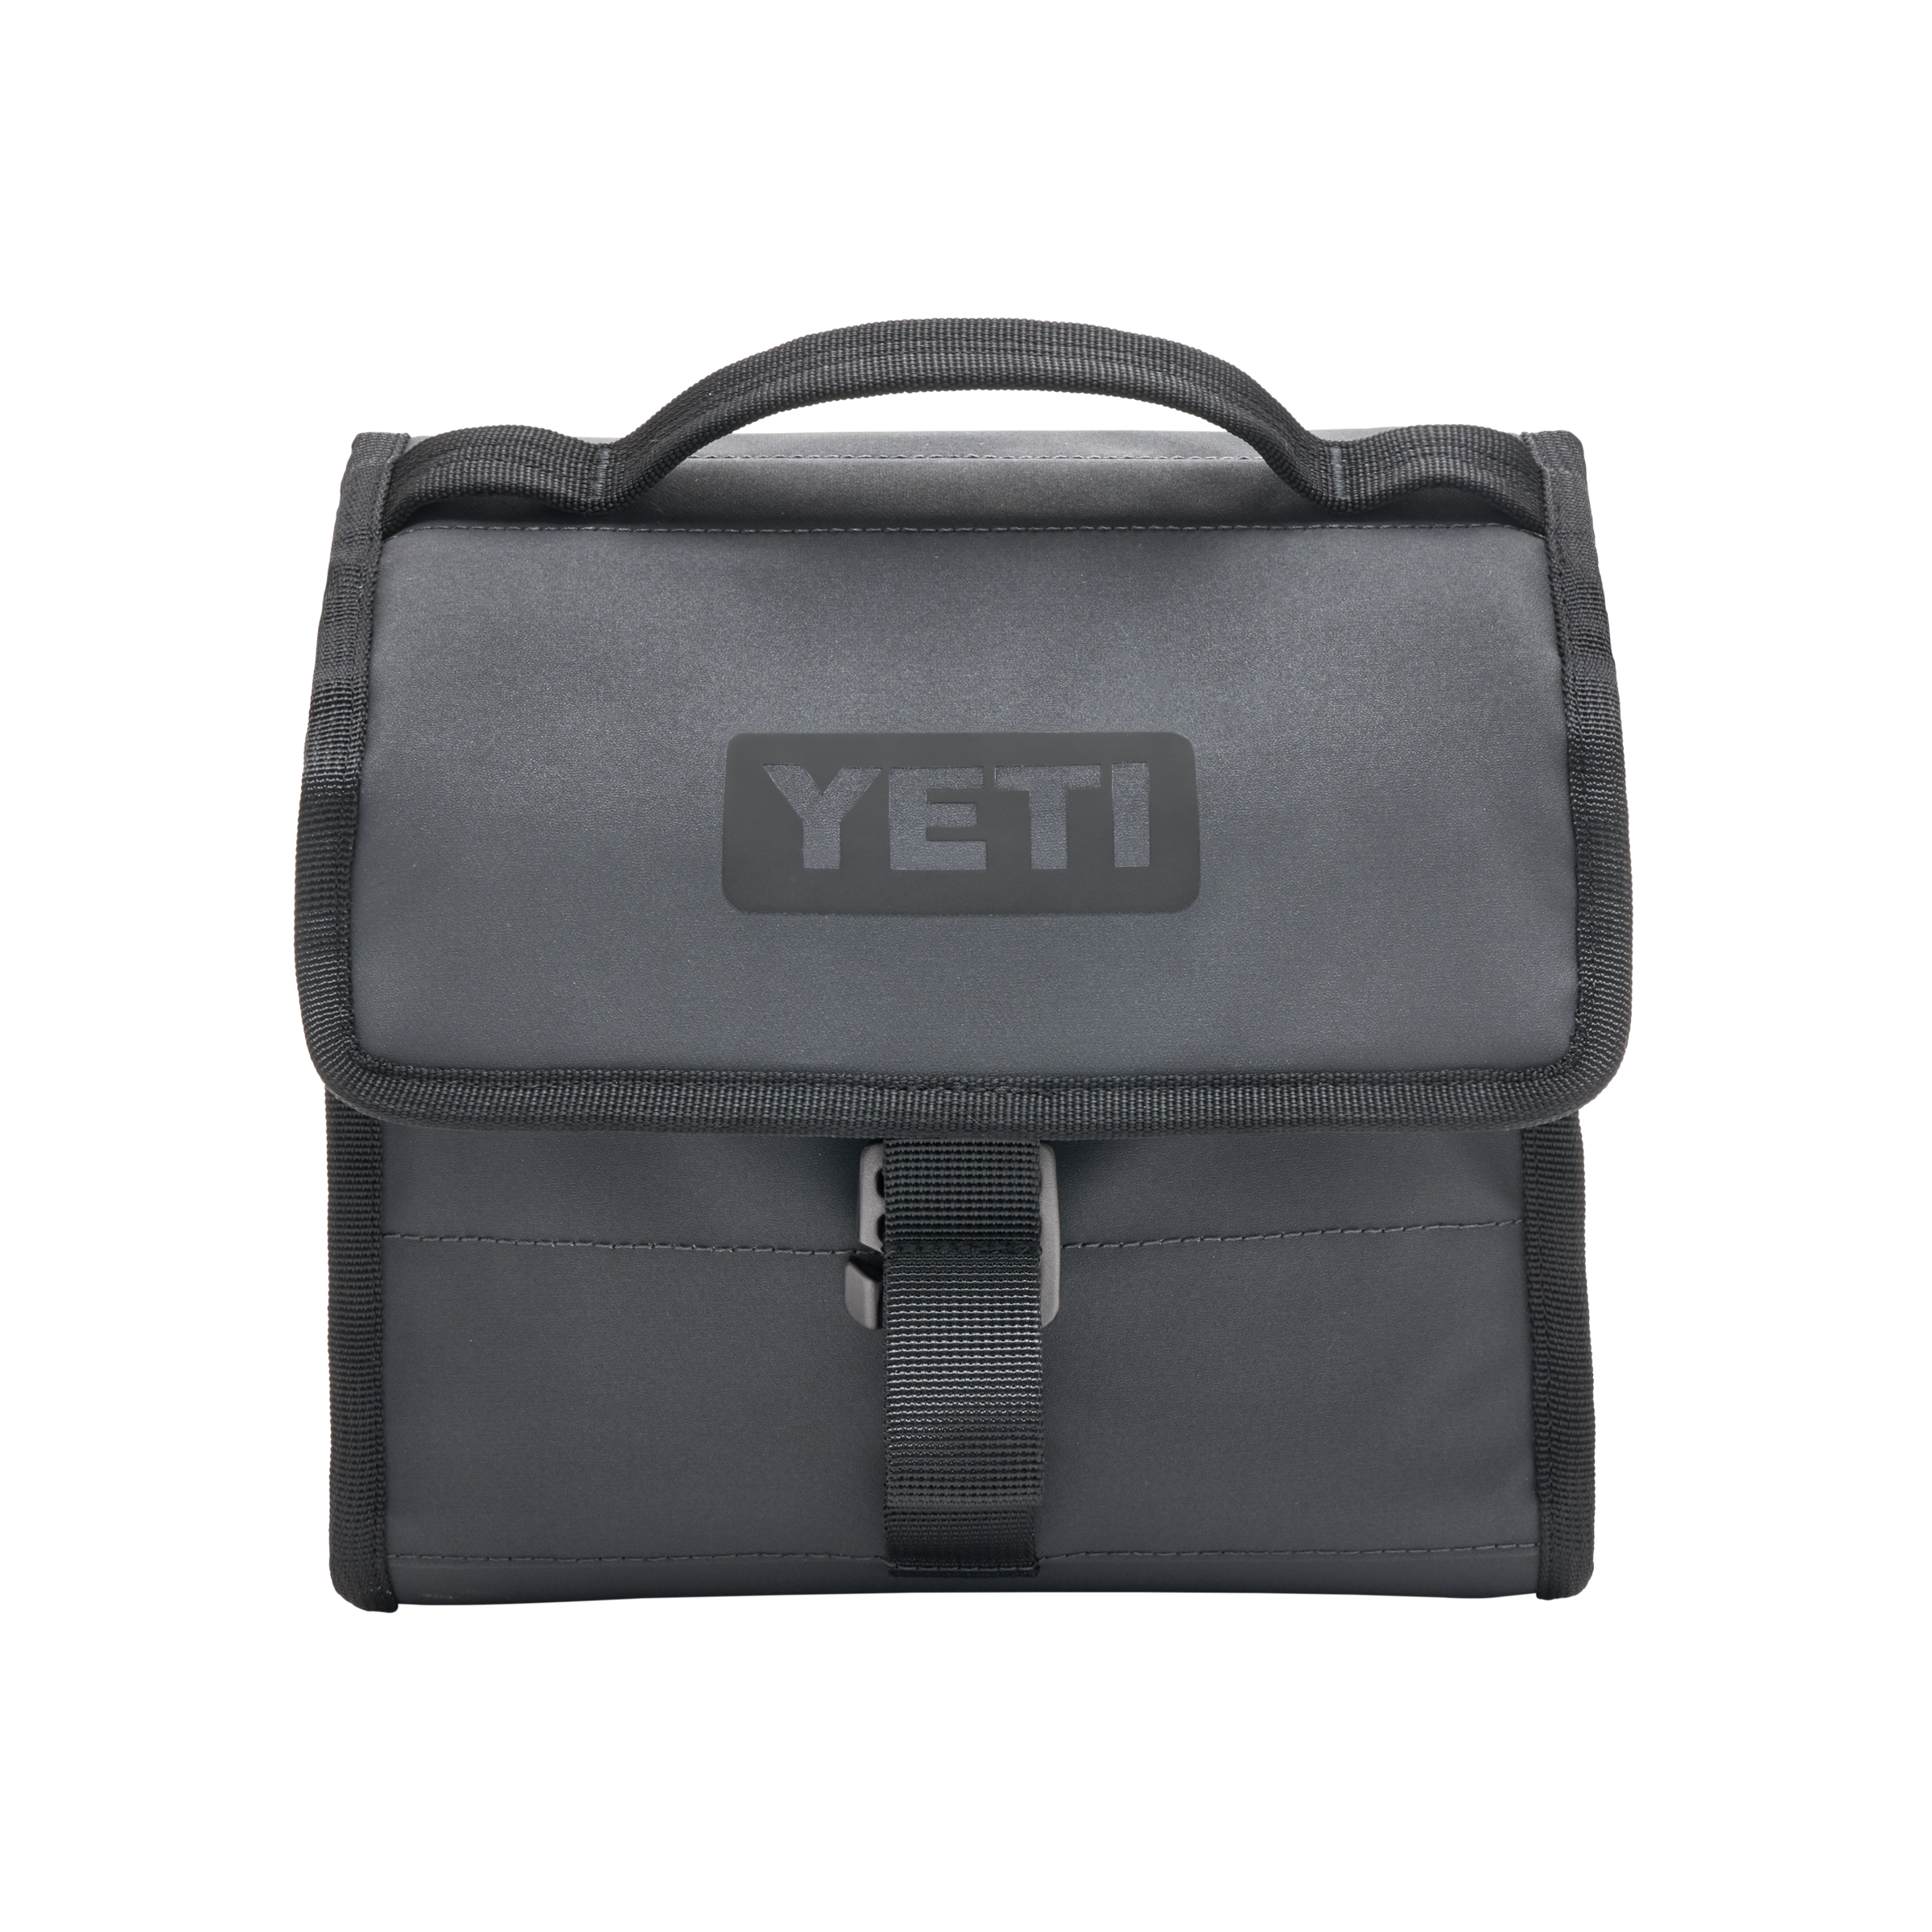 YETI DayTrip® Lunch Bag Charcoal